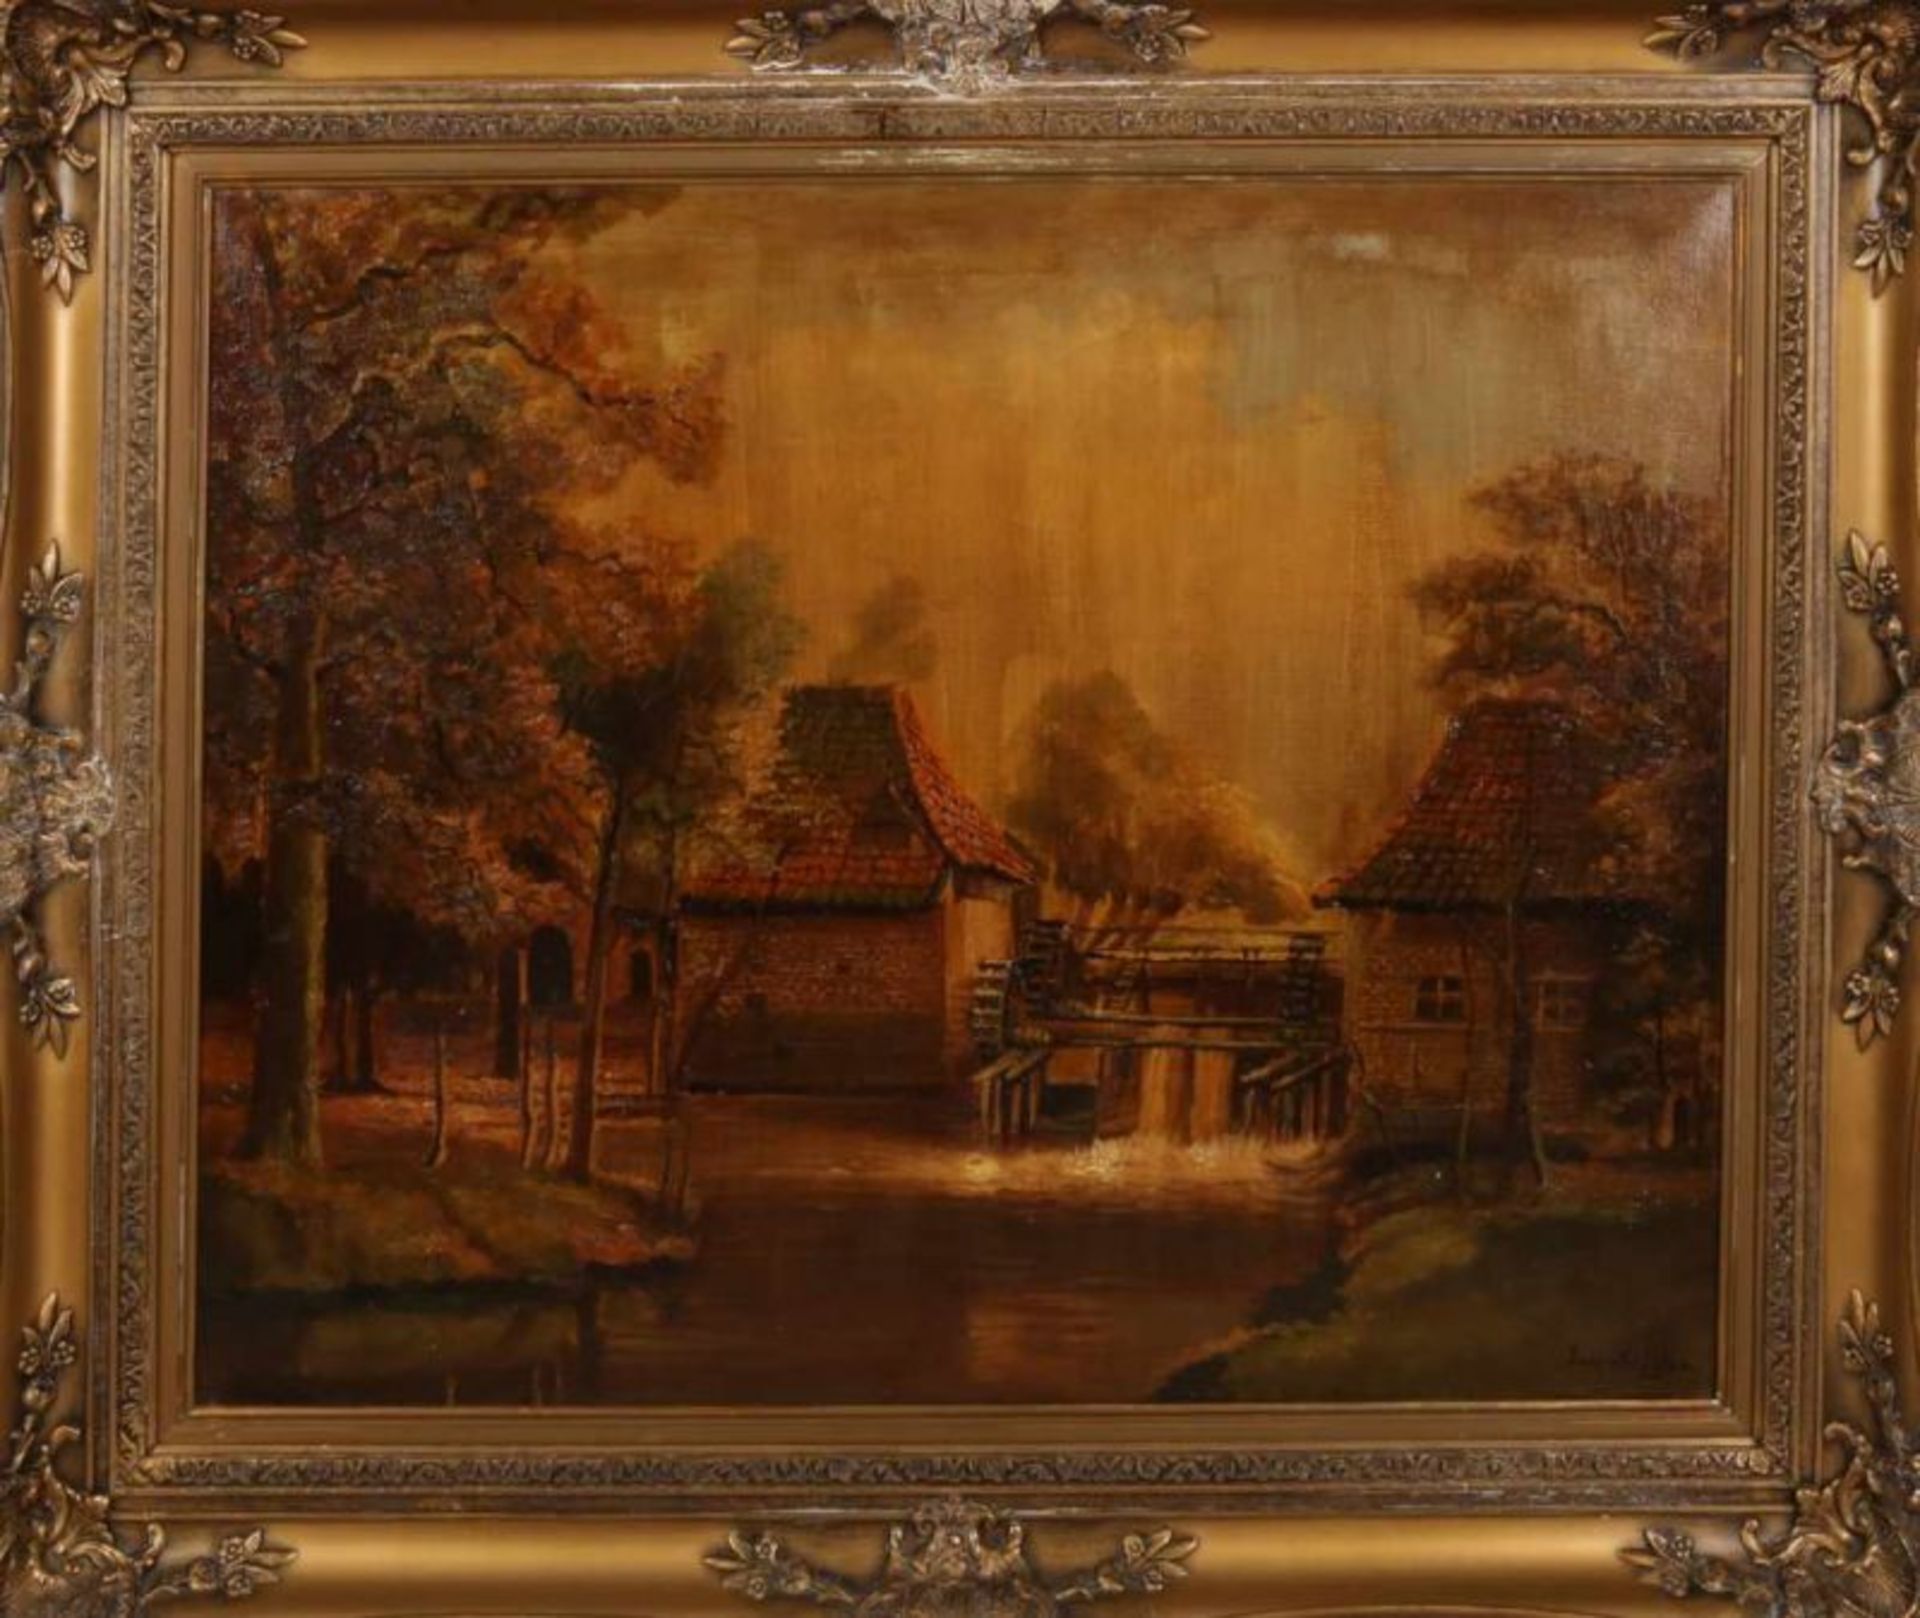 Jaap van Kregten, 1878-1967. Haaksbergen water mill. Oil paint on linen. Dimensions: 60 x 80 cm. In